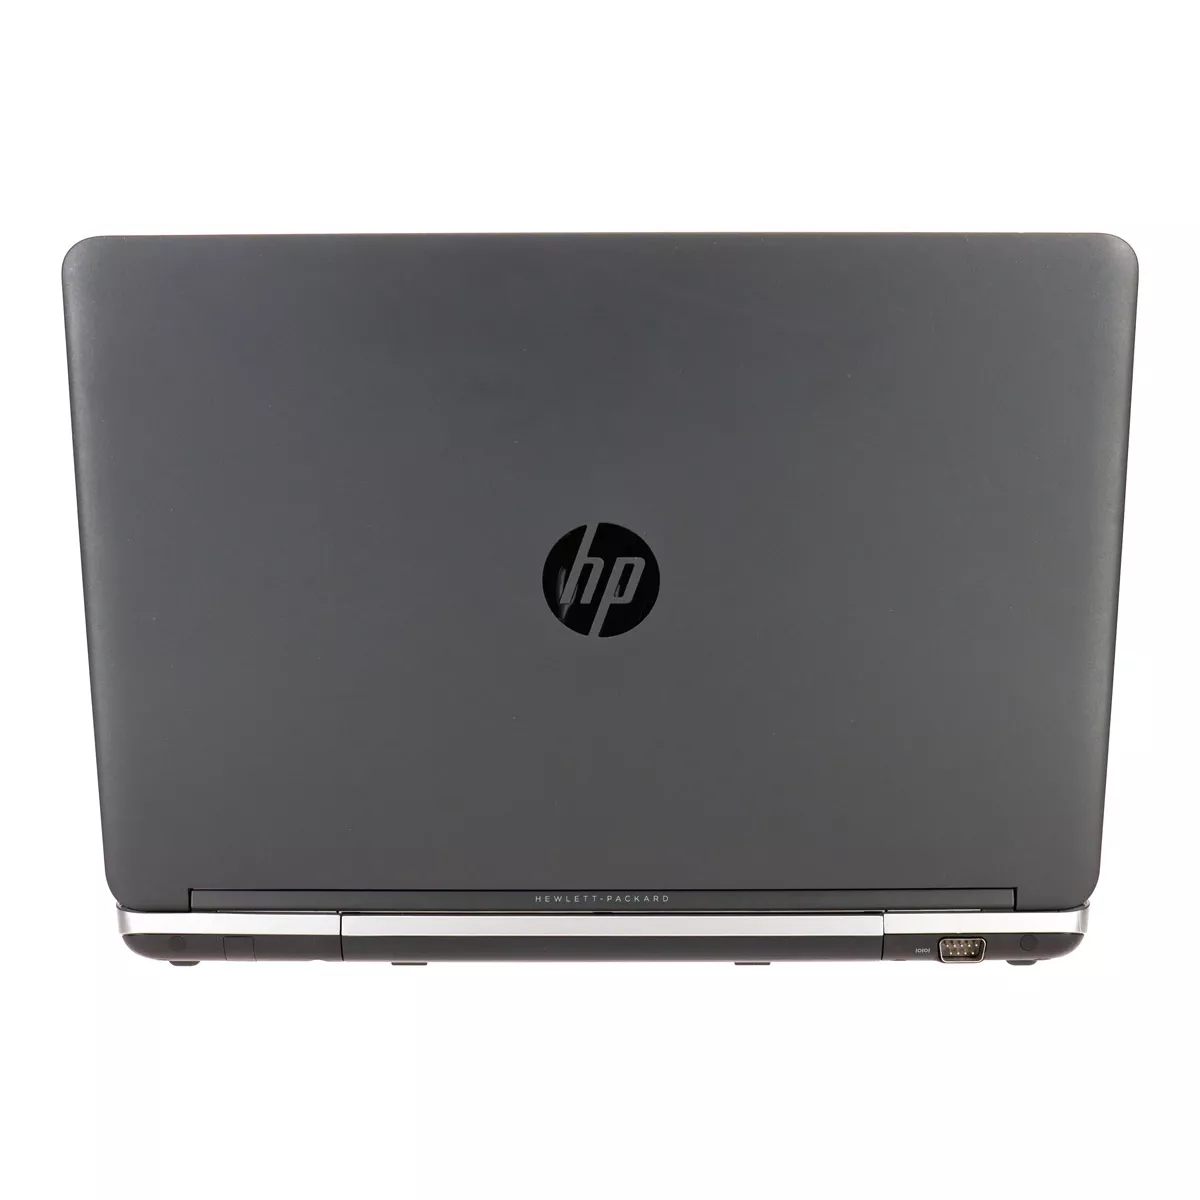 HP ProBook 650 G1 Core i5 4300M 2,6 GHz Full-HD 8 GB 256 GB SSD